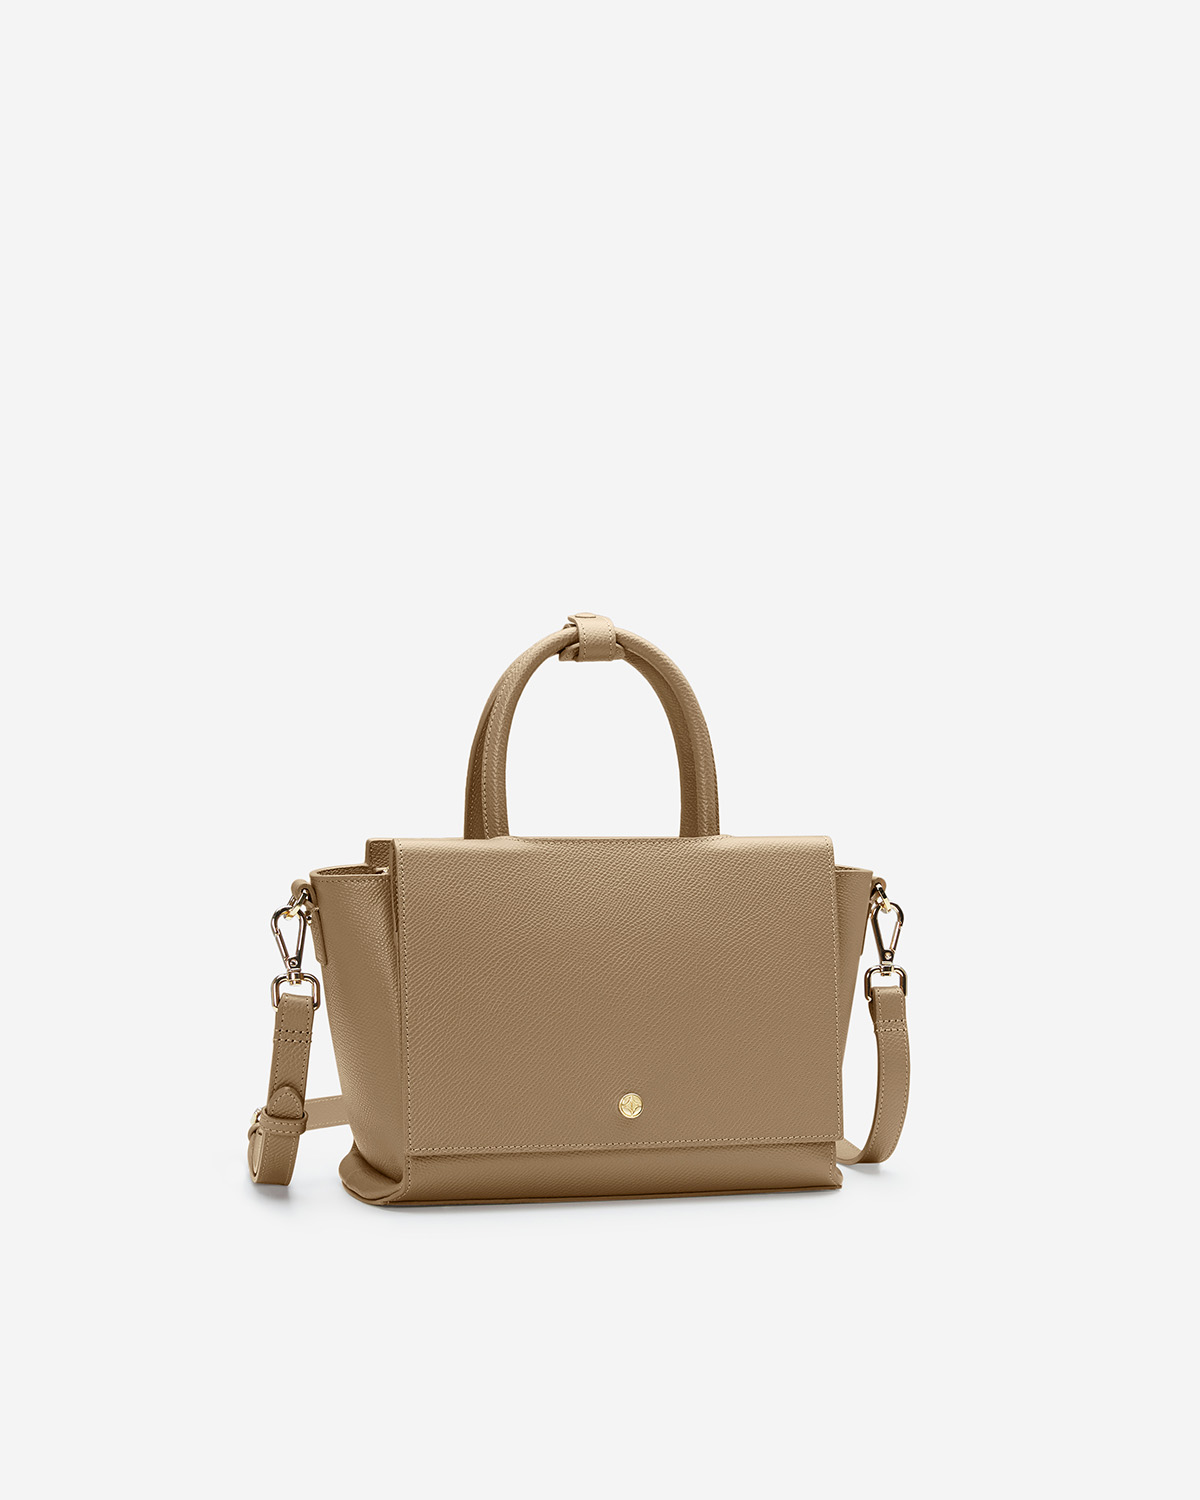 กระเป๋าถือหนังแท้ VERA Heidi Leather Handbag, ไซส์ 25 สี Martini Olive